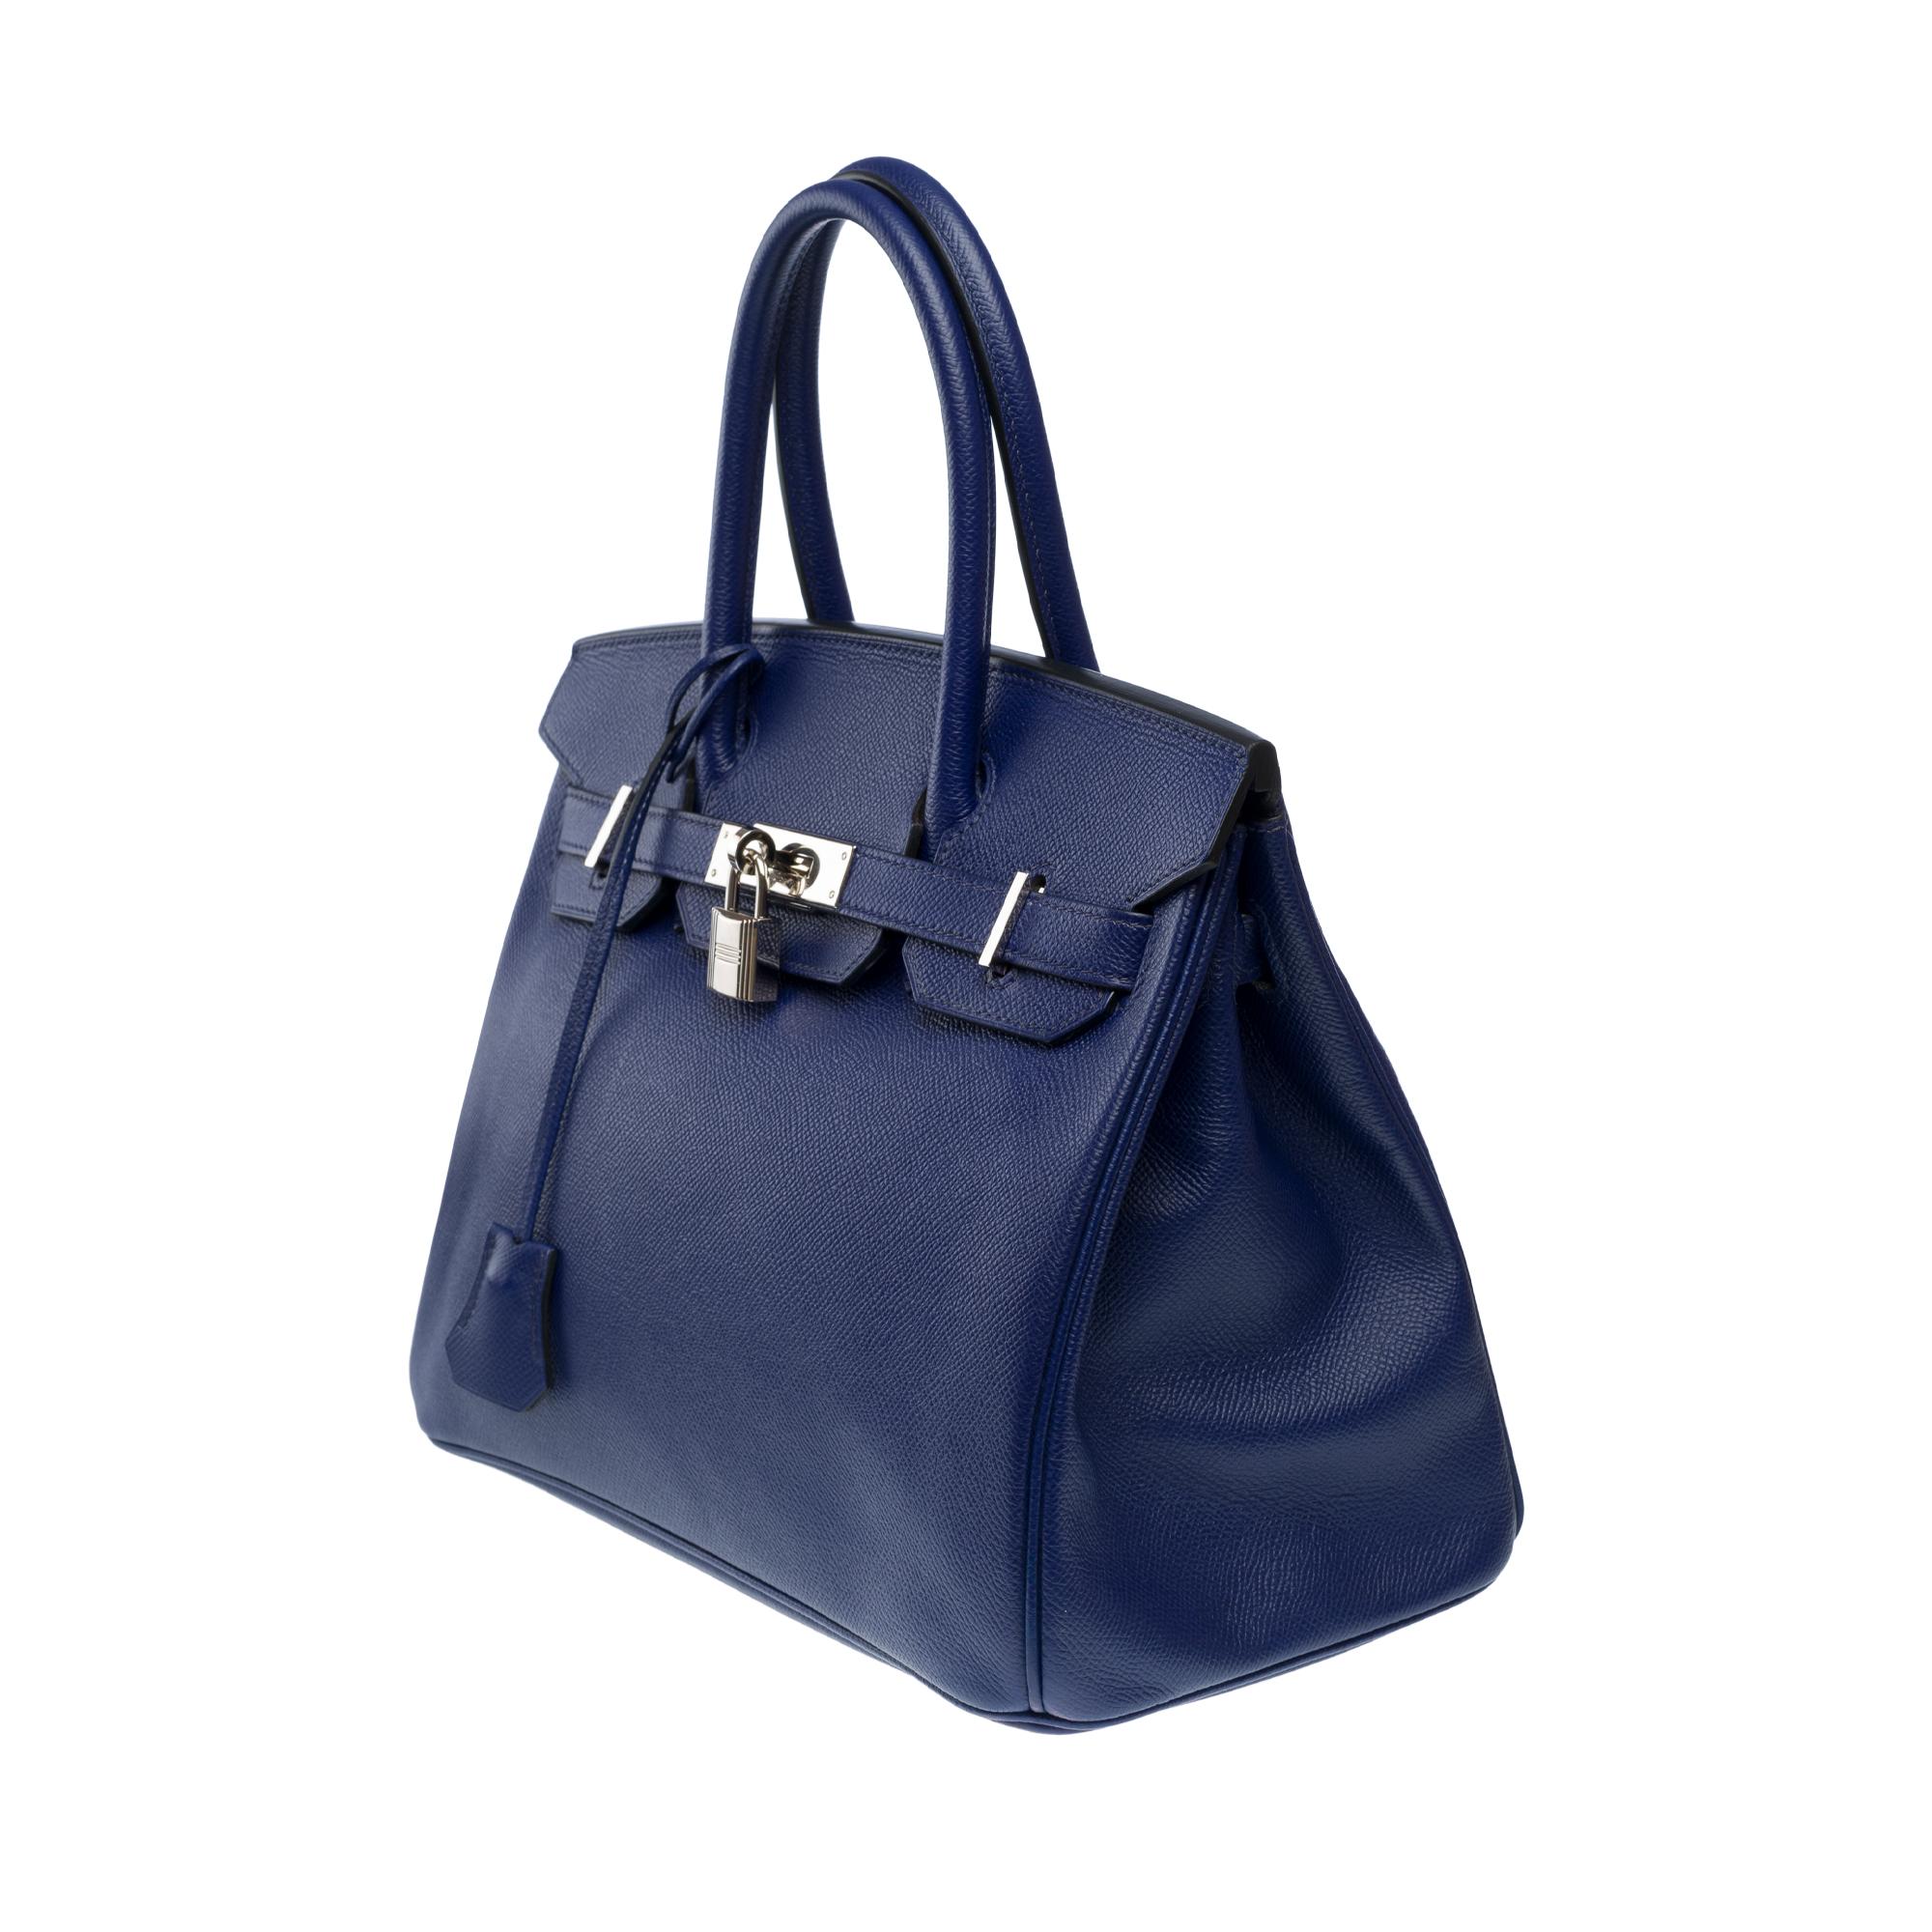 Women's Stunning Hermes Birkin 30 handbag in Blue Sapphire Epsom leather, SHW For Sale